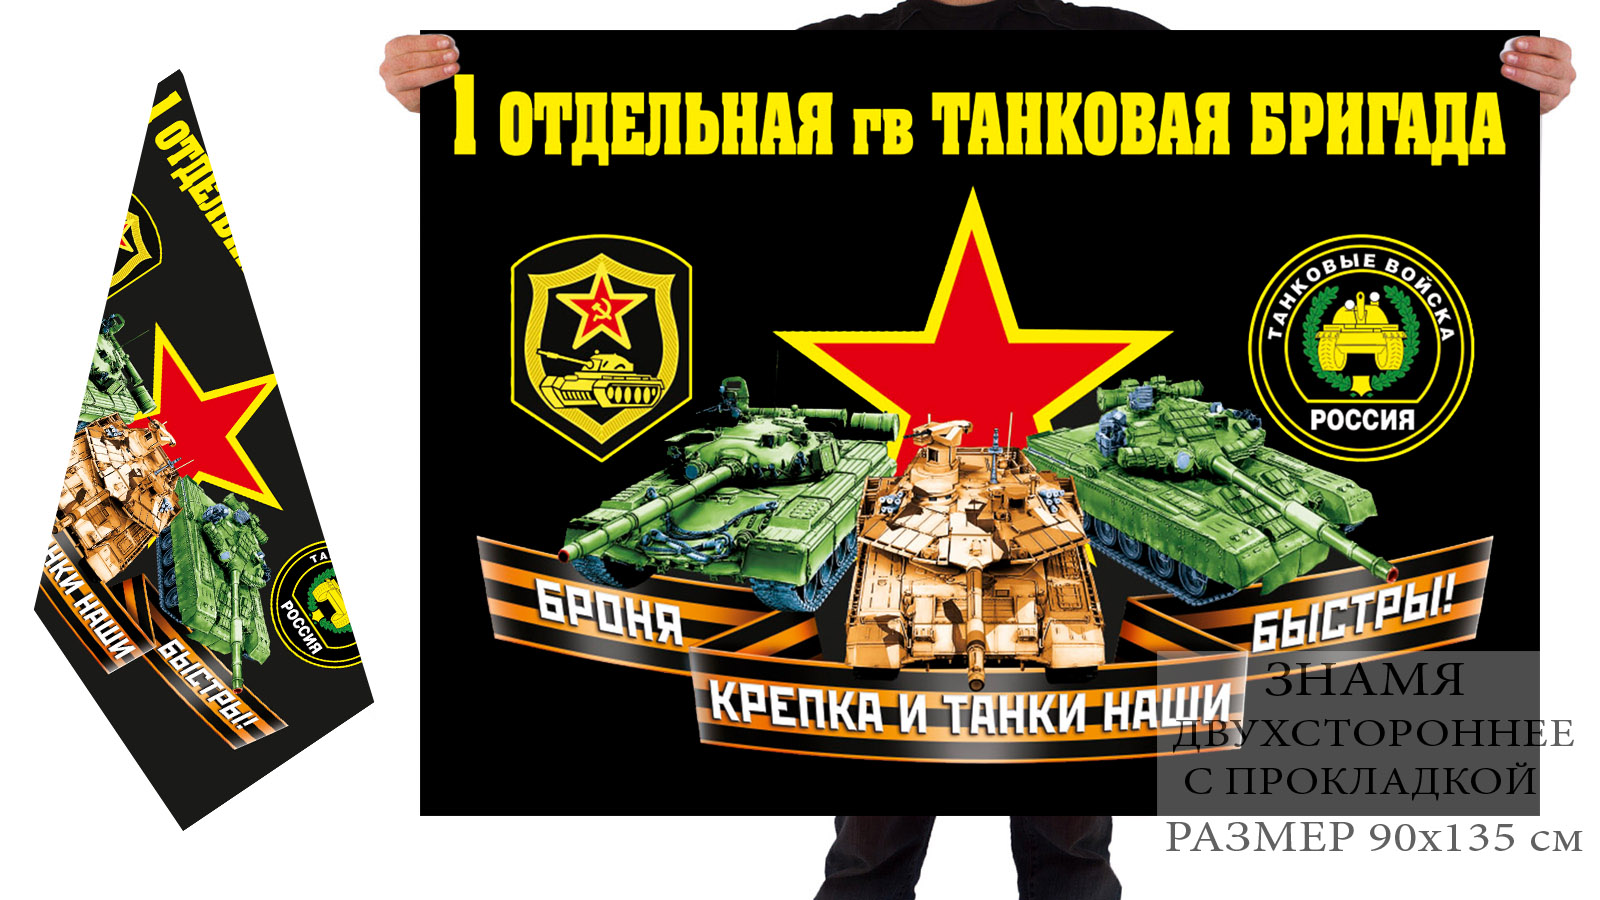 Двусторонний флаг 1 отдельной гв. танковой бригады